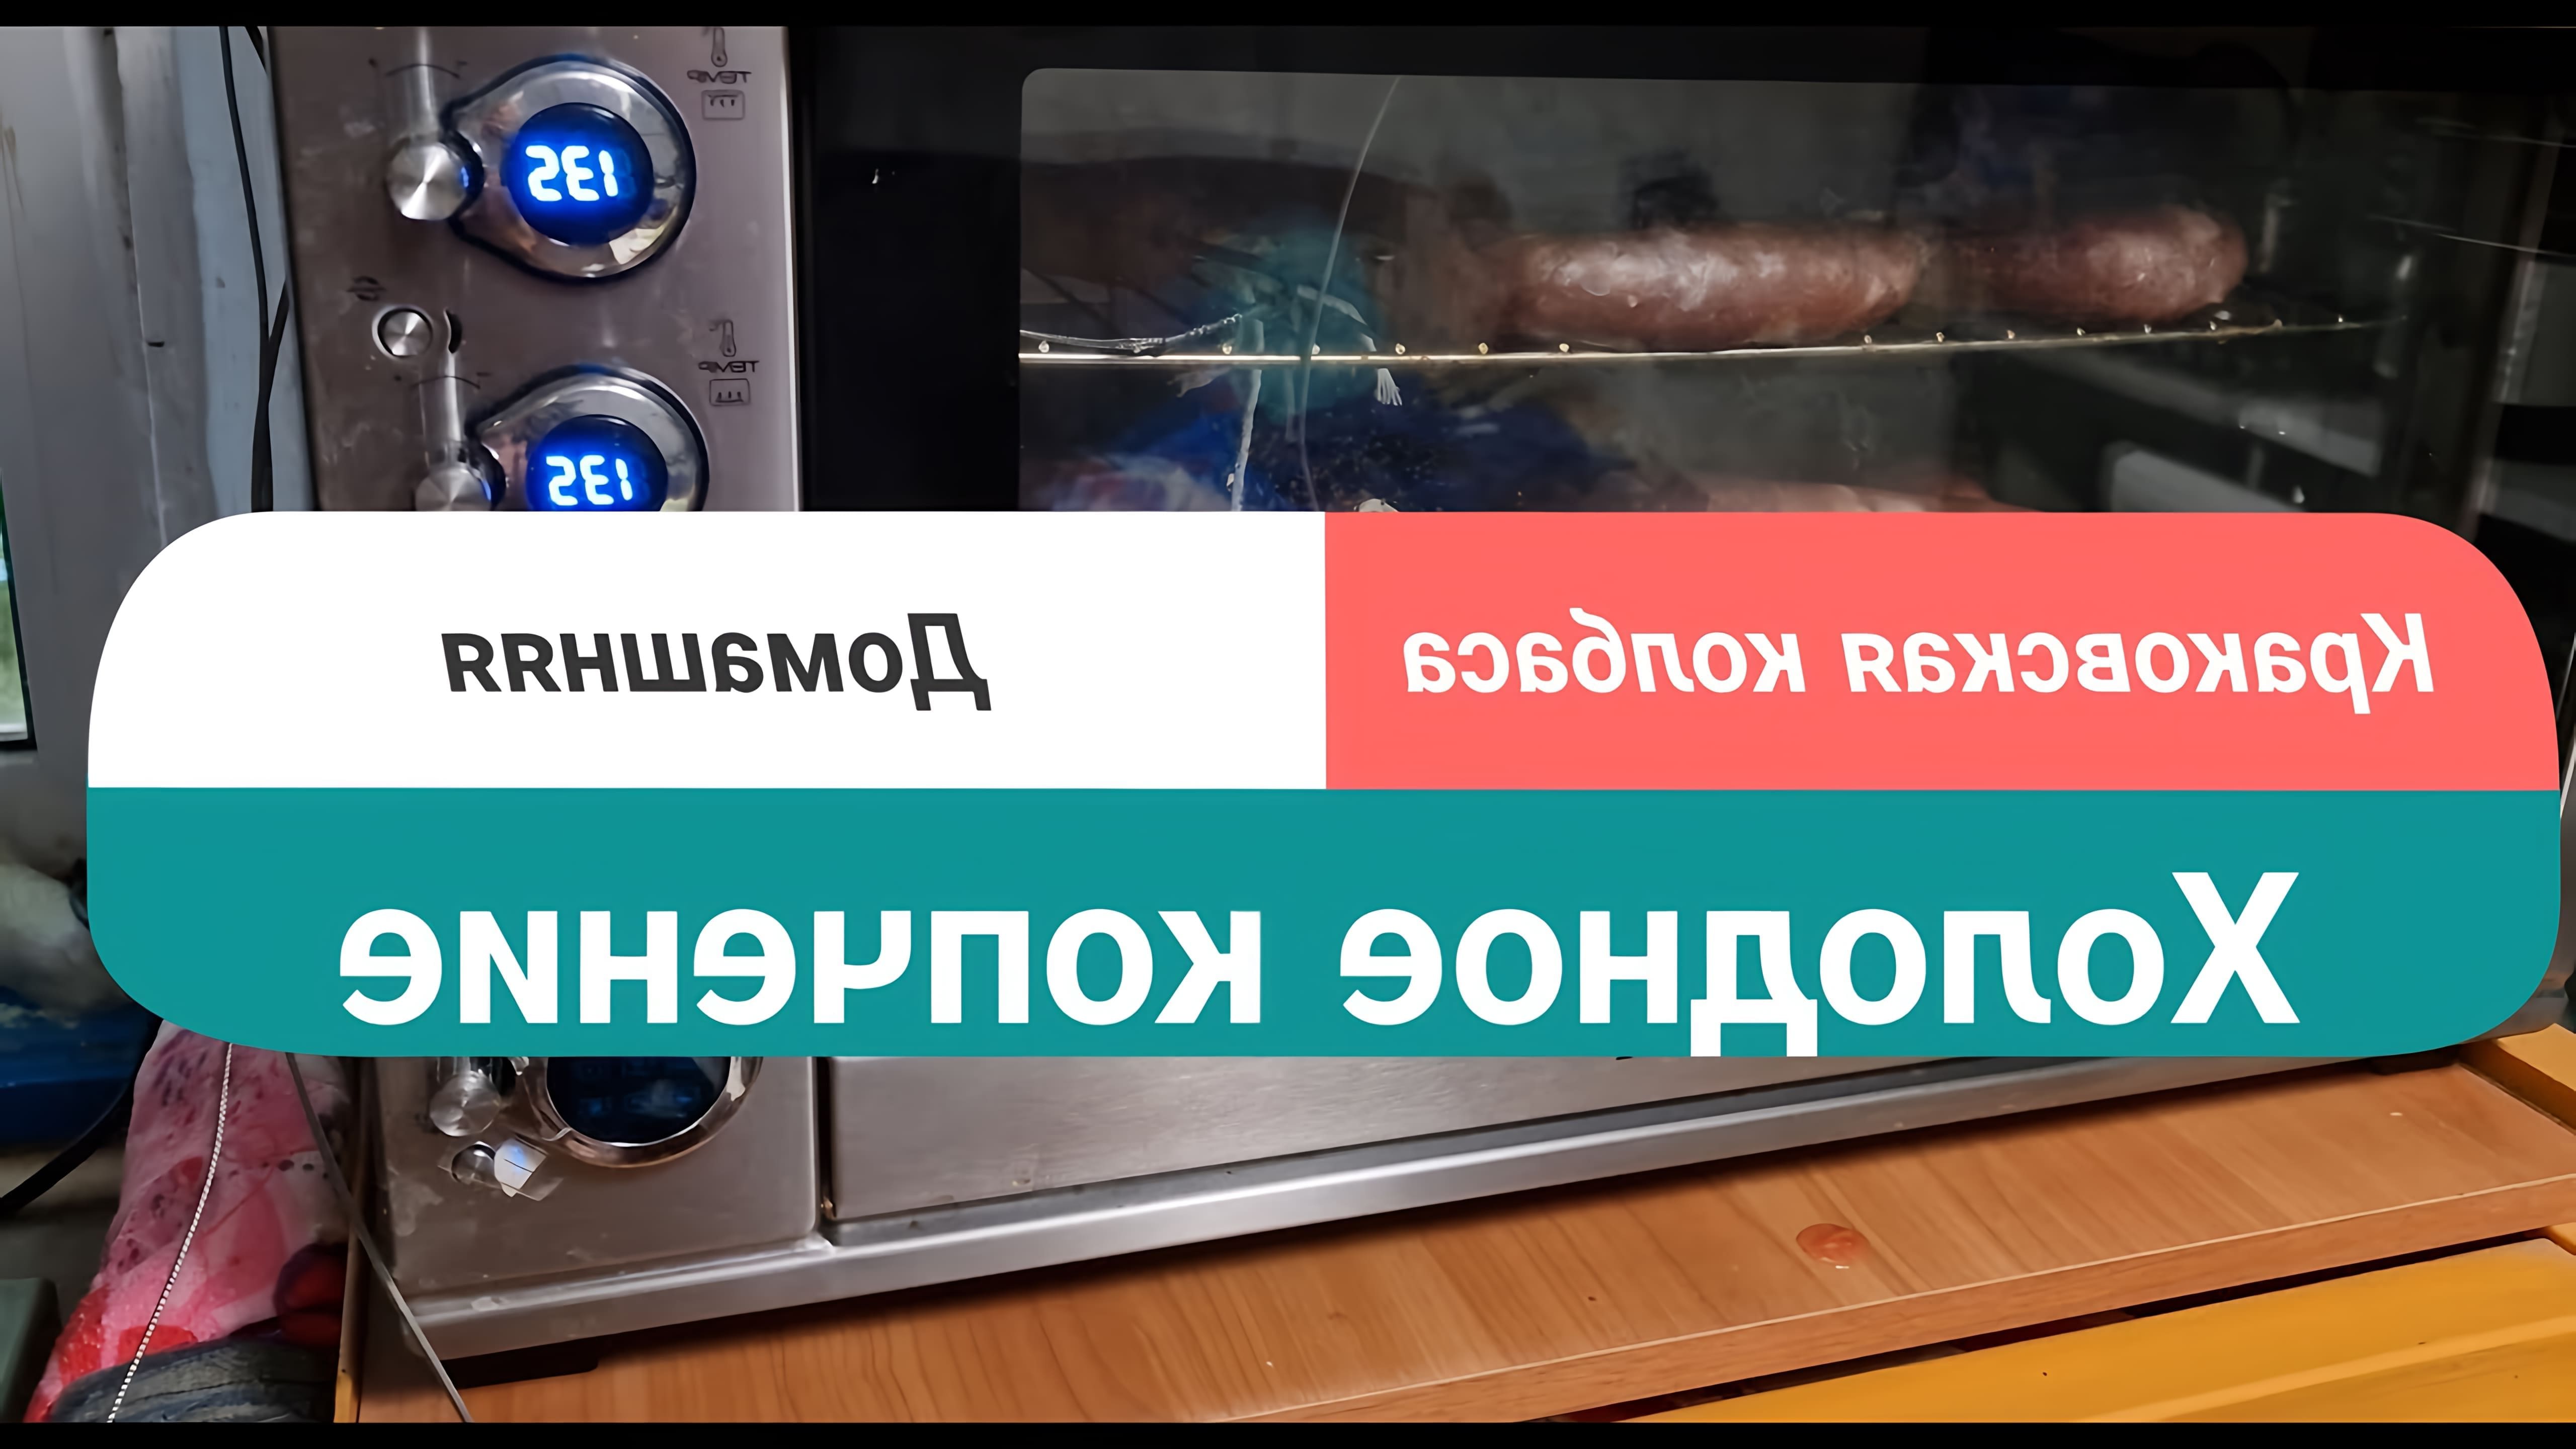 В данном видео демонстрируется процесс холодного копчения колбасы в домашних условиях